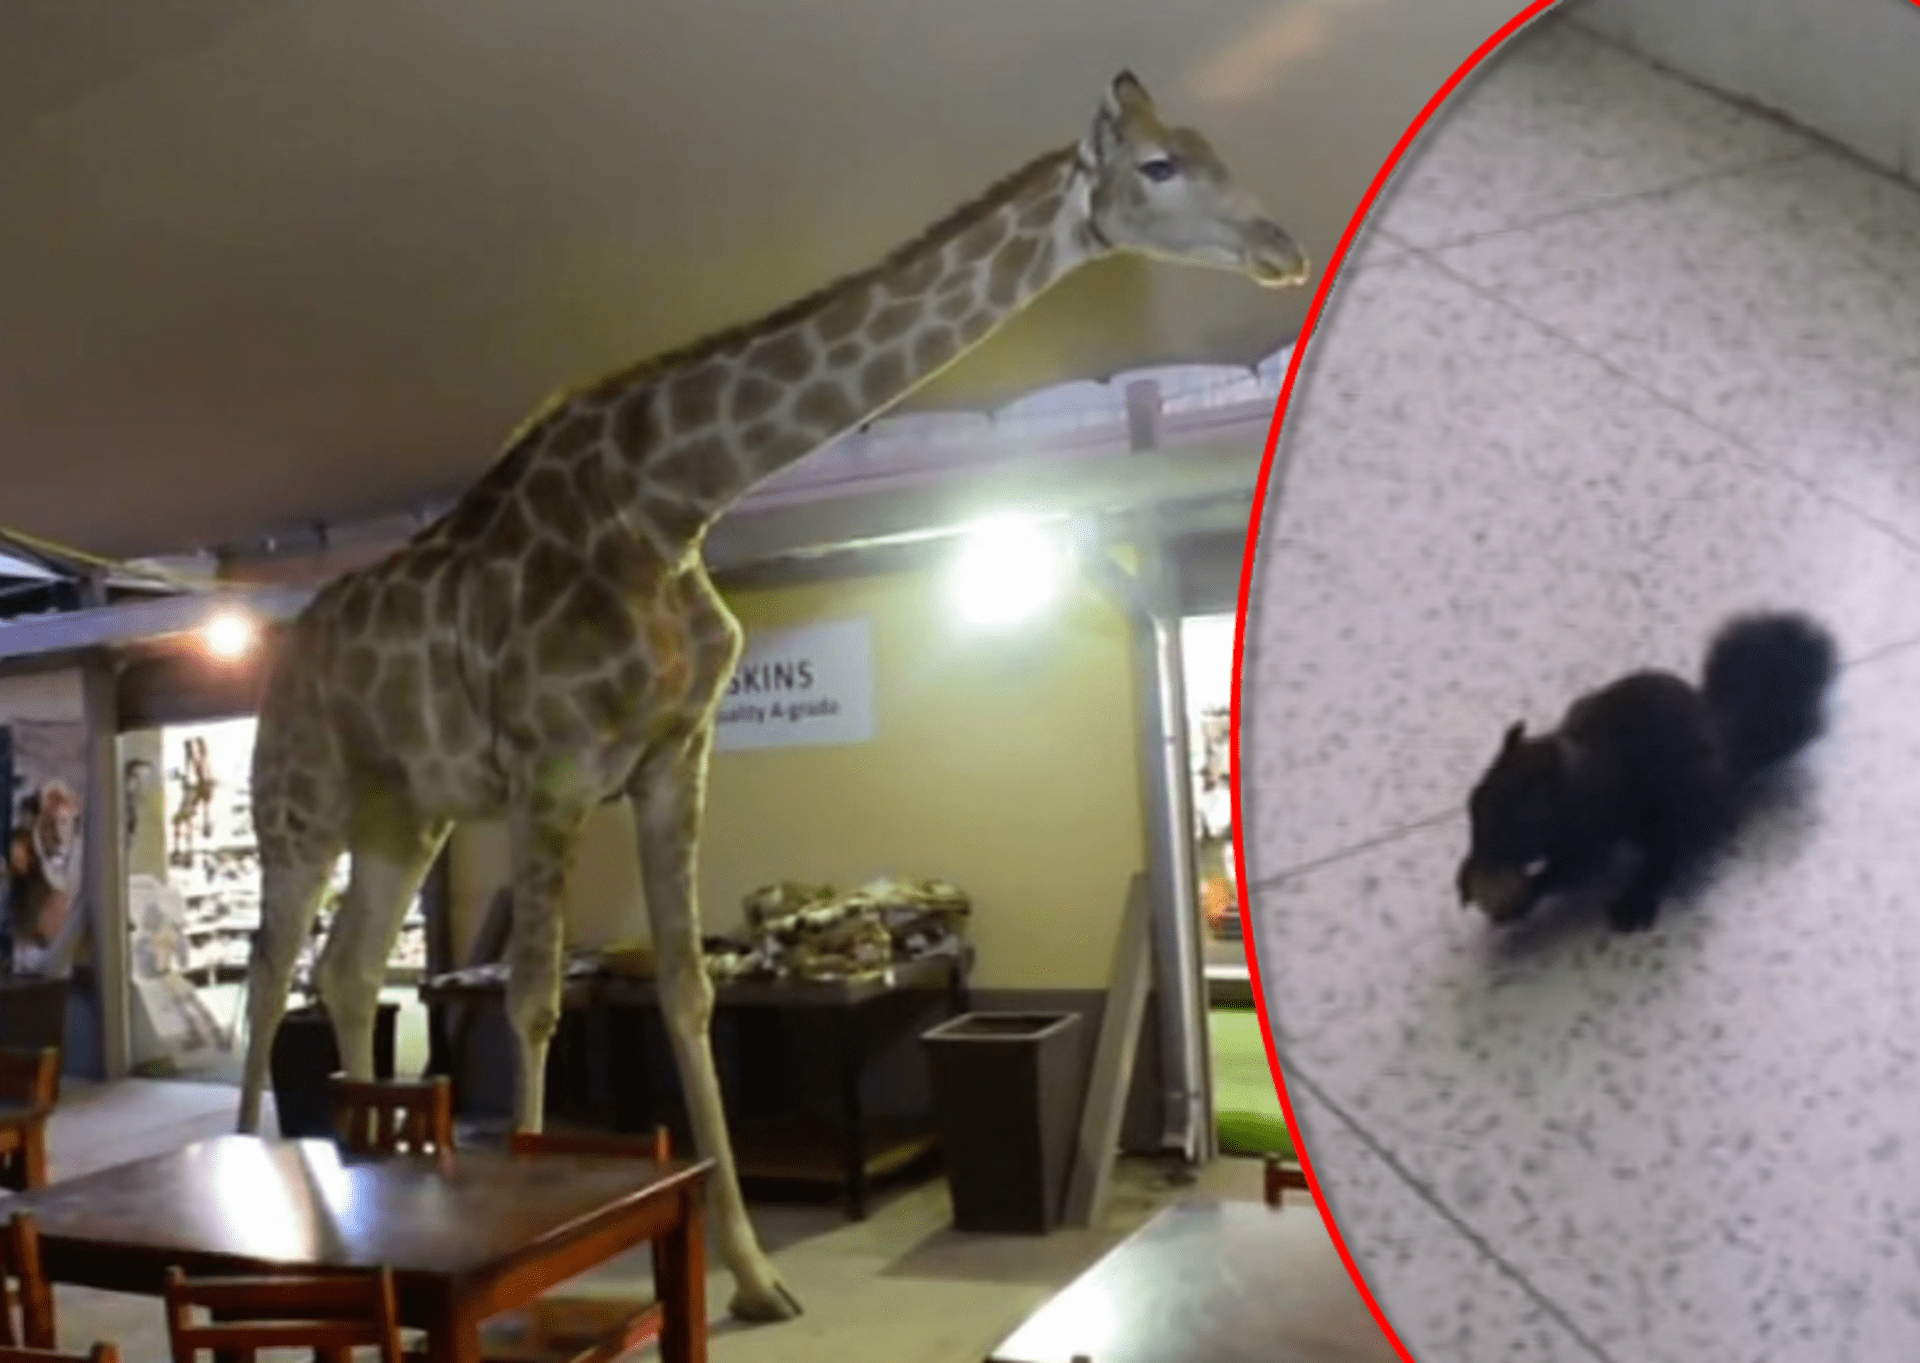 video Divácké zprávy: Veveřák rád chodí do zubařské ordinace - vždycky tu na něj čeká nějaký oříšek od pacientů. To žirafa si musí nejdřív něco vyžebrat sama...